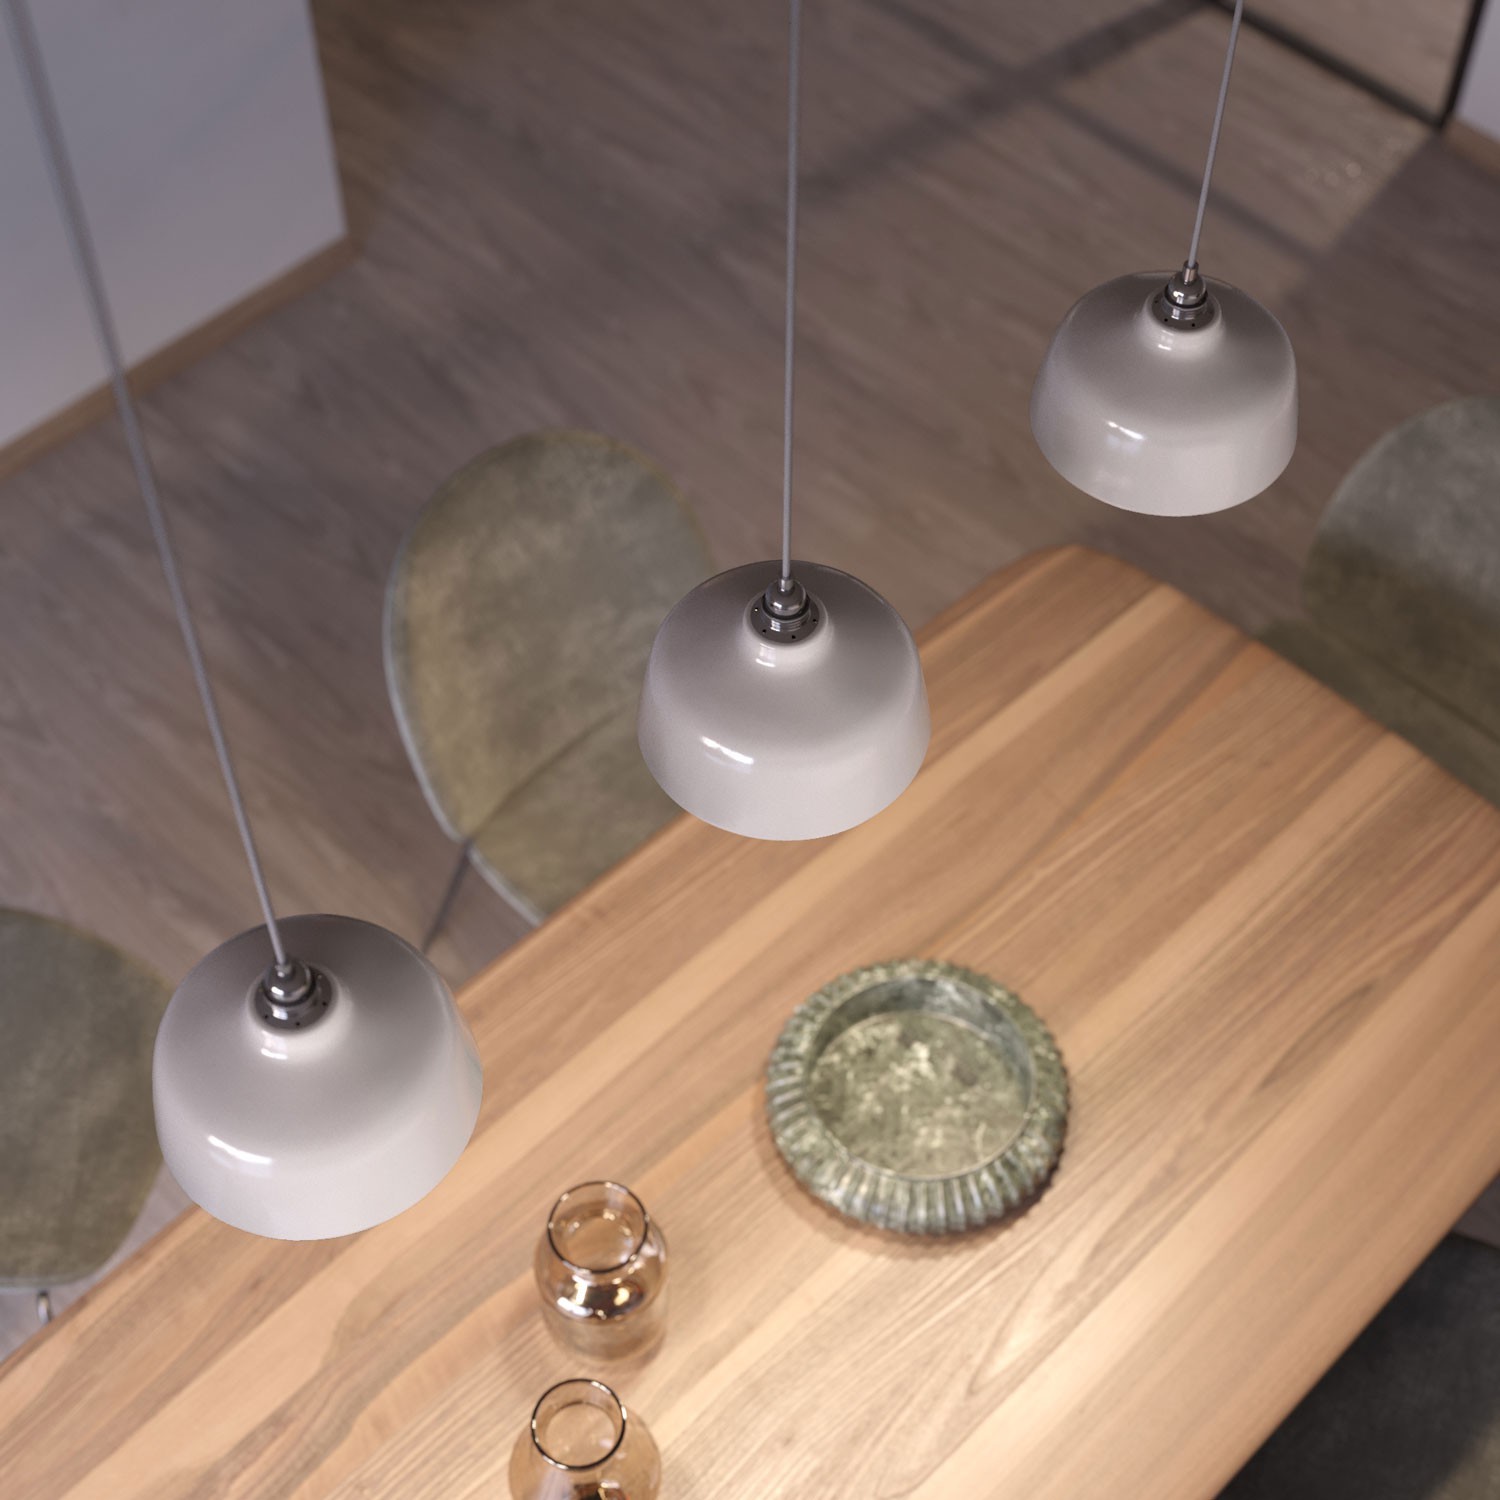 Pendelleuchte inklusive Textilkabel, tassenförmigem Lampenschirm aus Keramik und Metall-Zubehör - Made in Italy